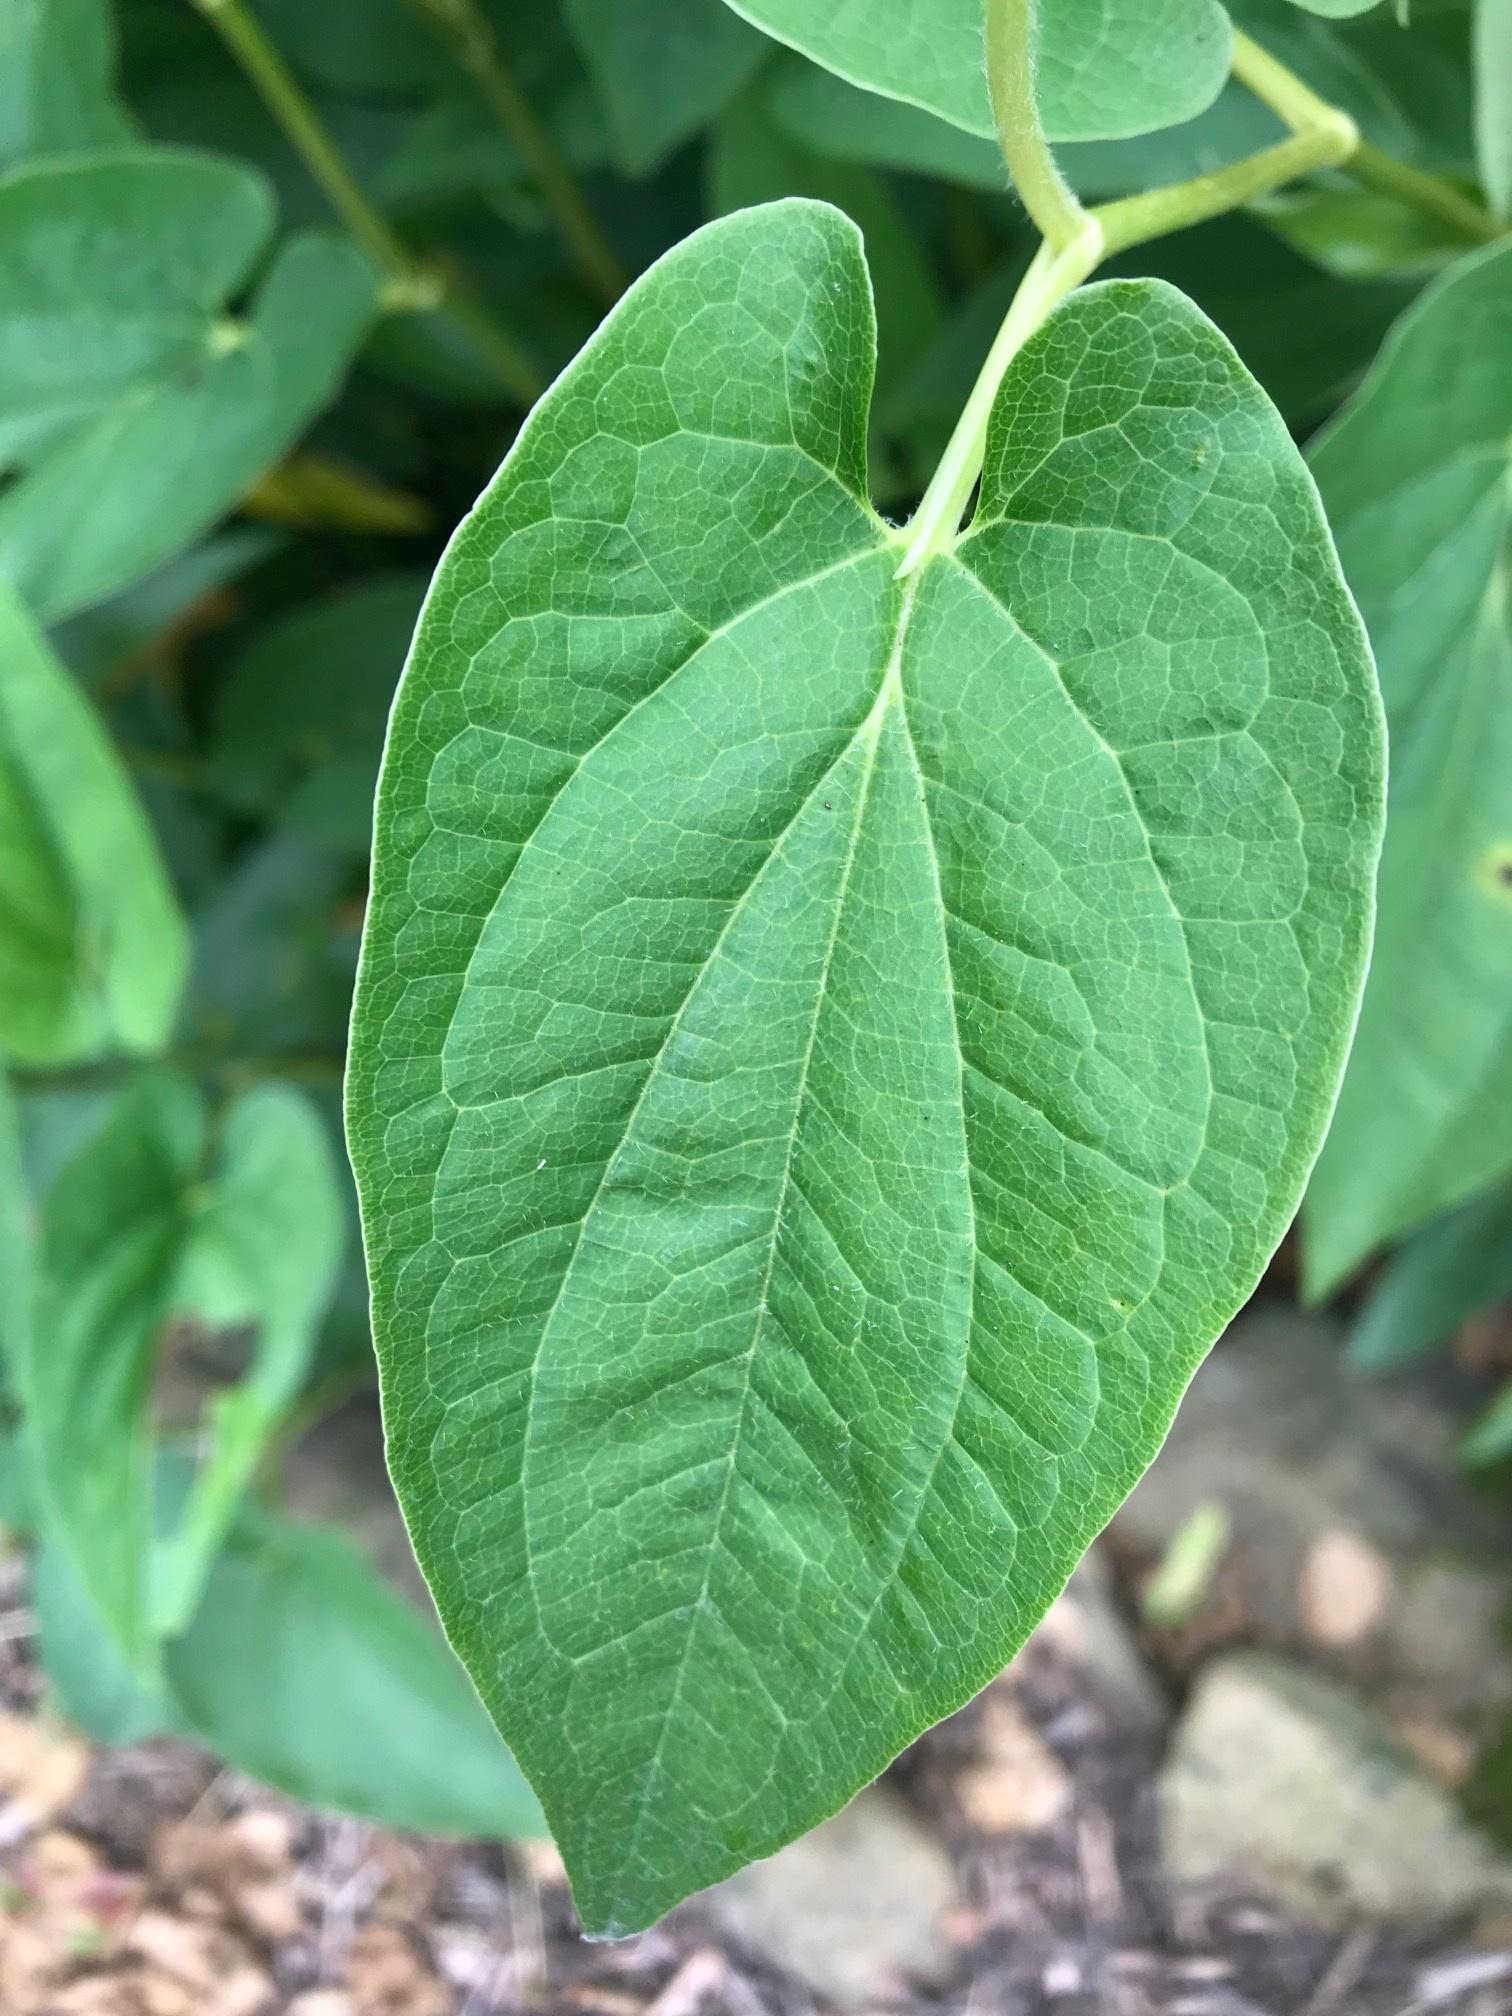 Closeup of leaf